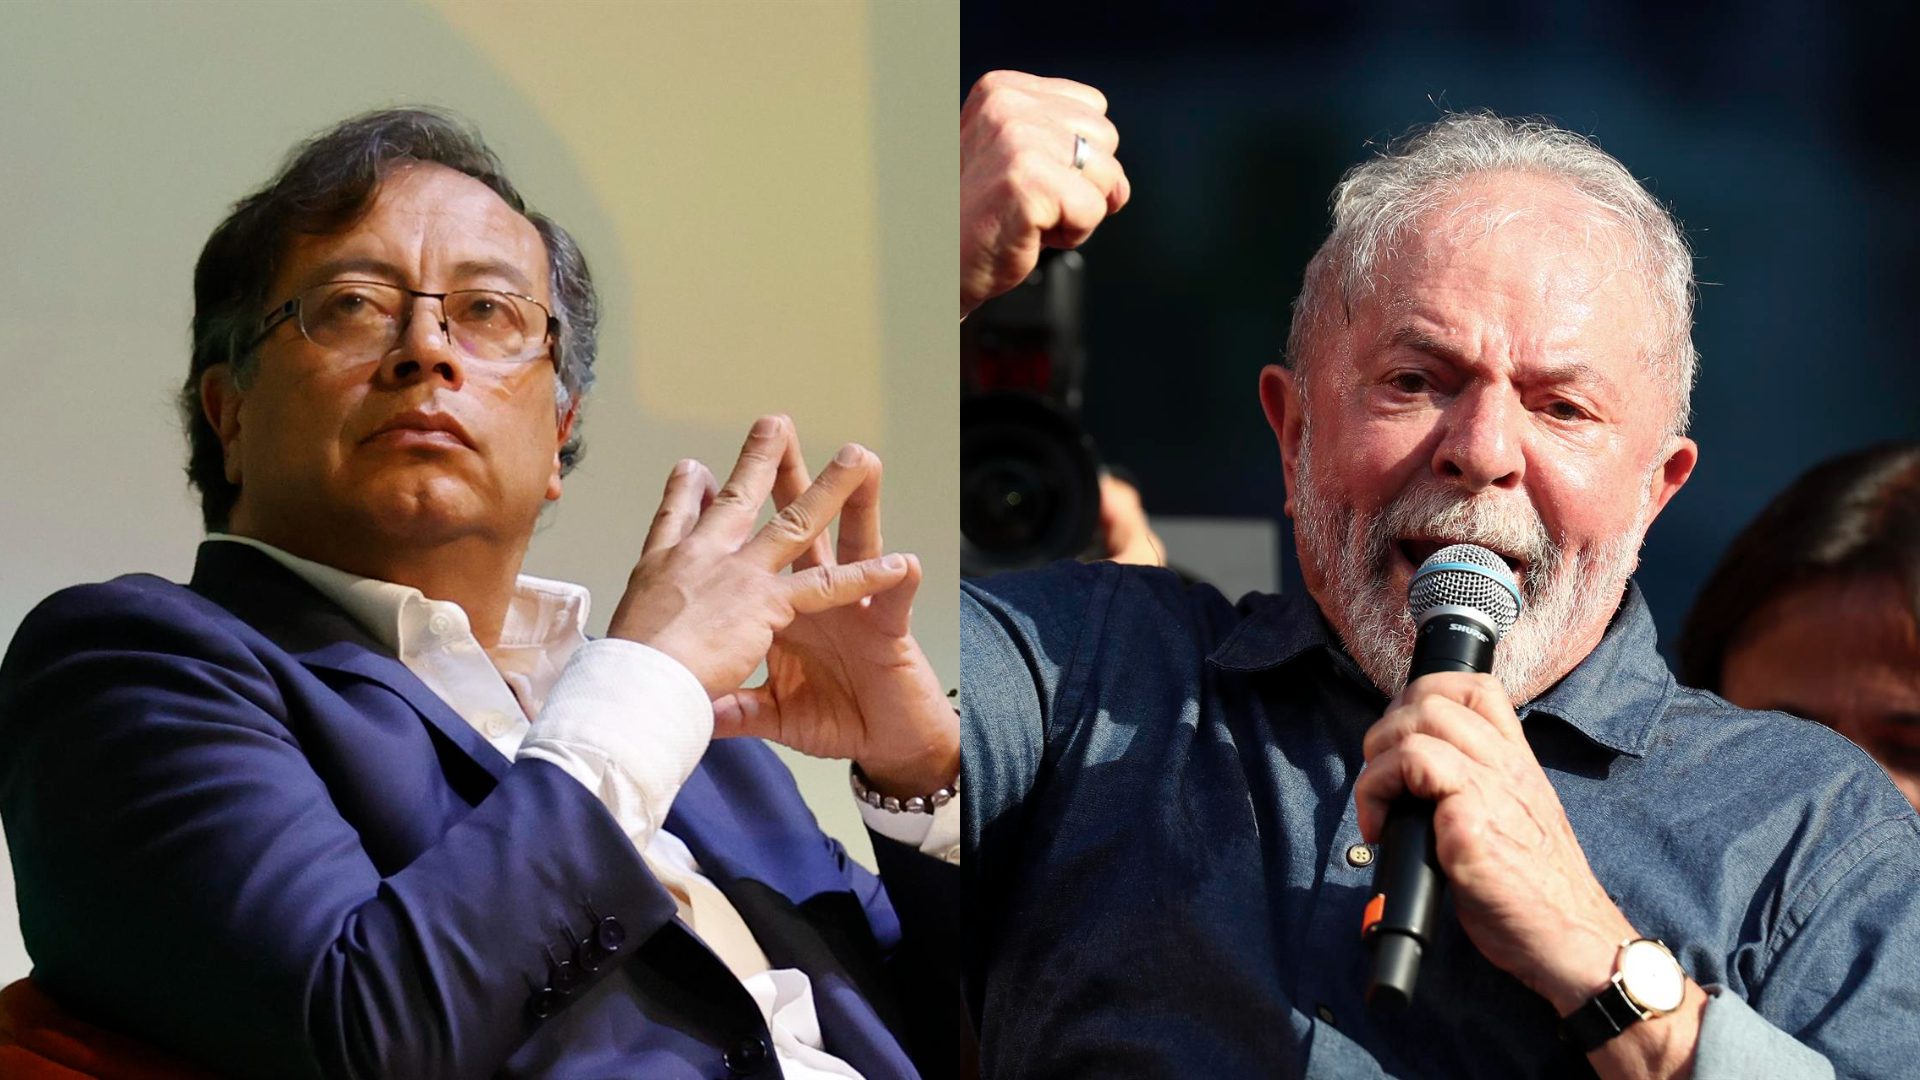 LULA NO CREE EN PETRO: izquierdista brasileño criticó al candidato de la izquierda colombiana